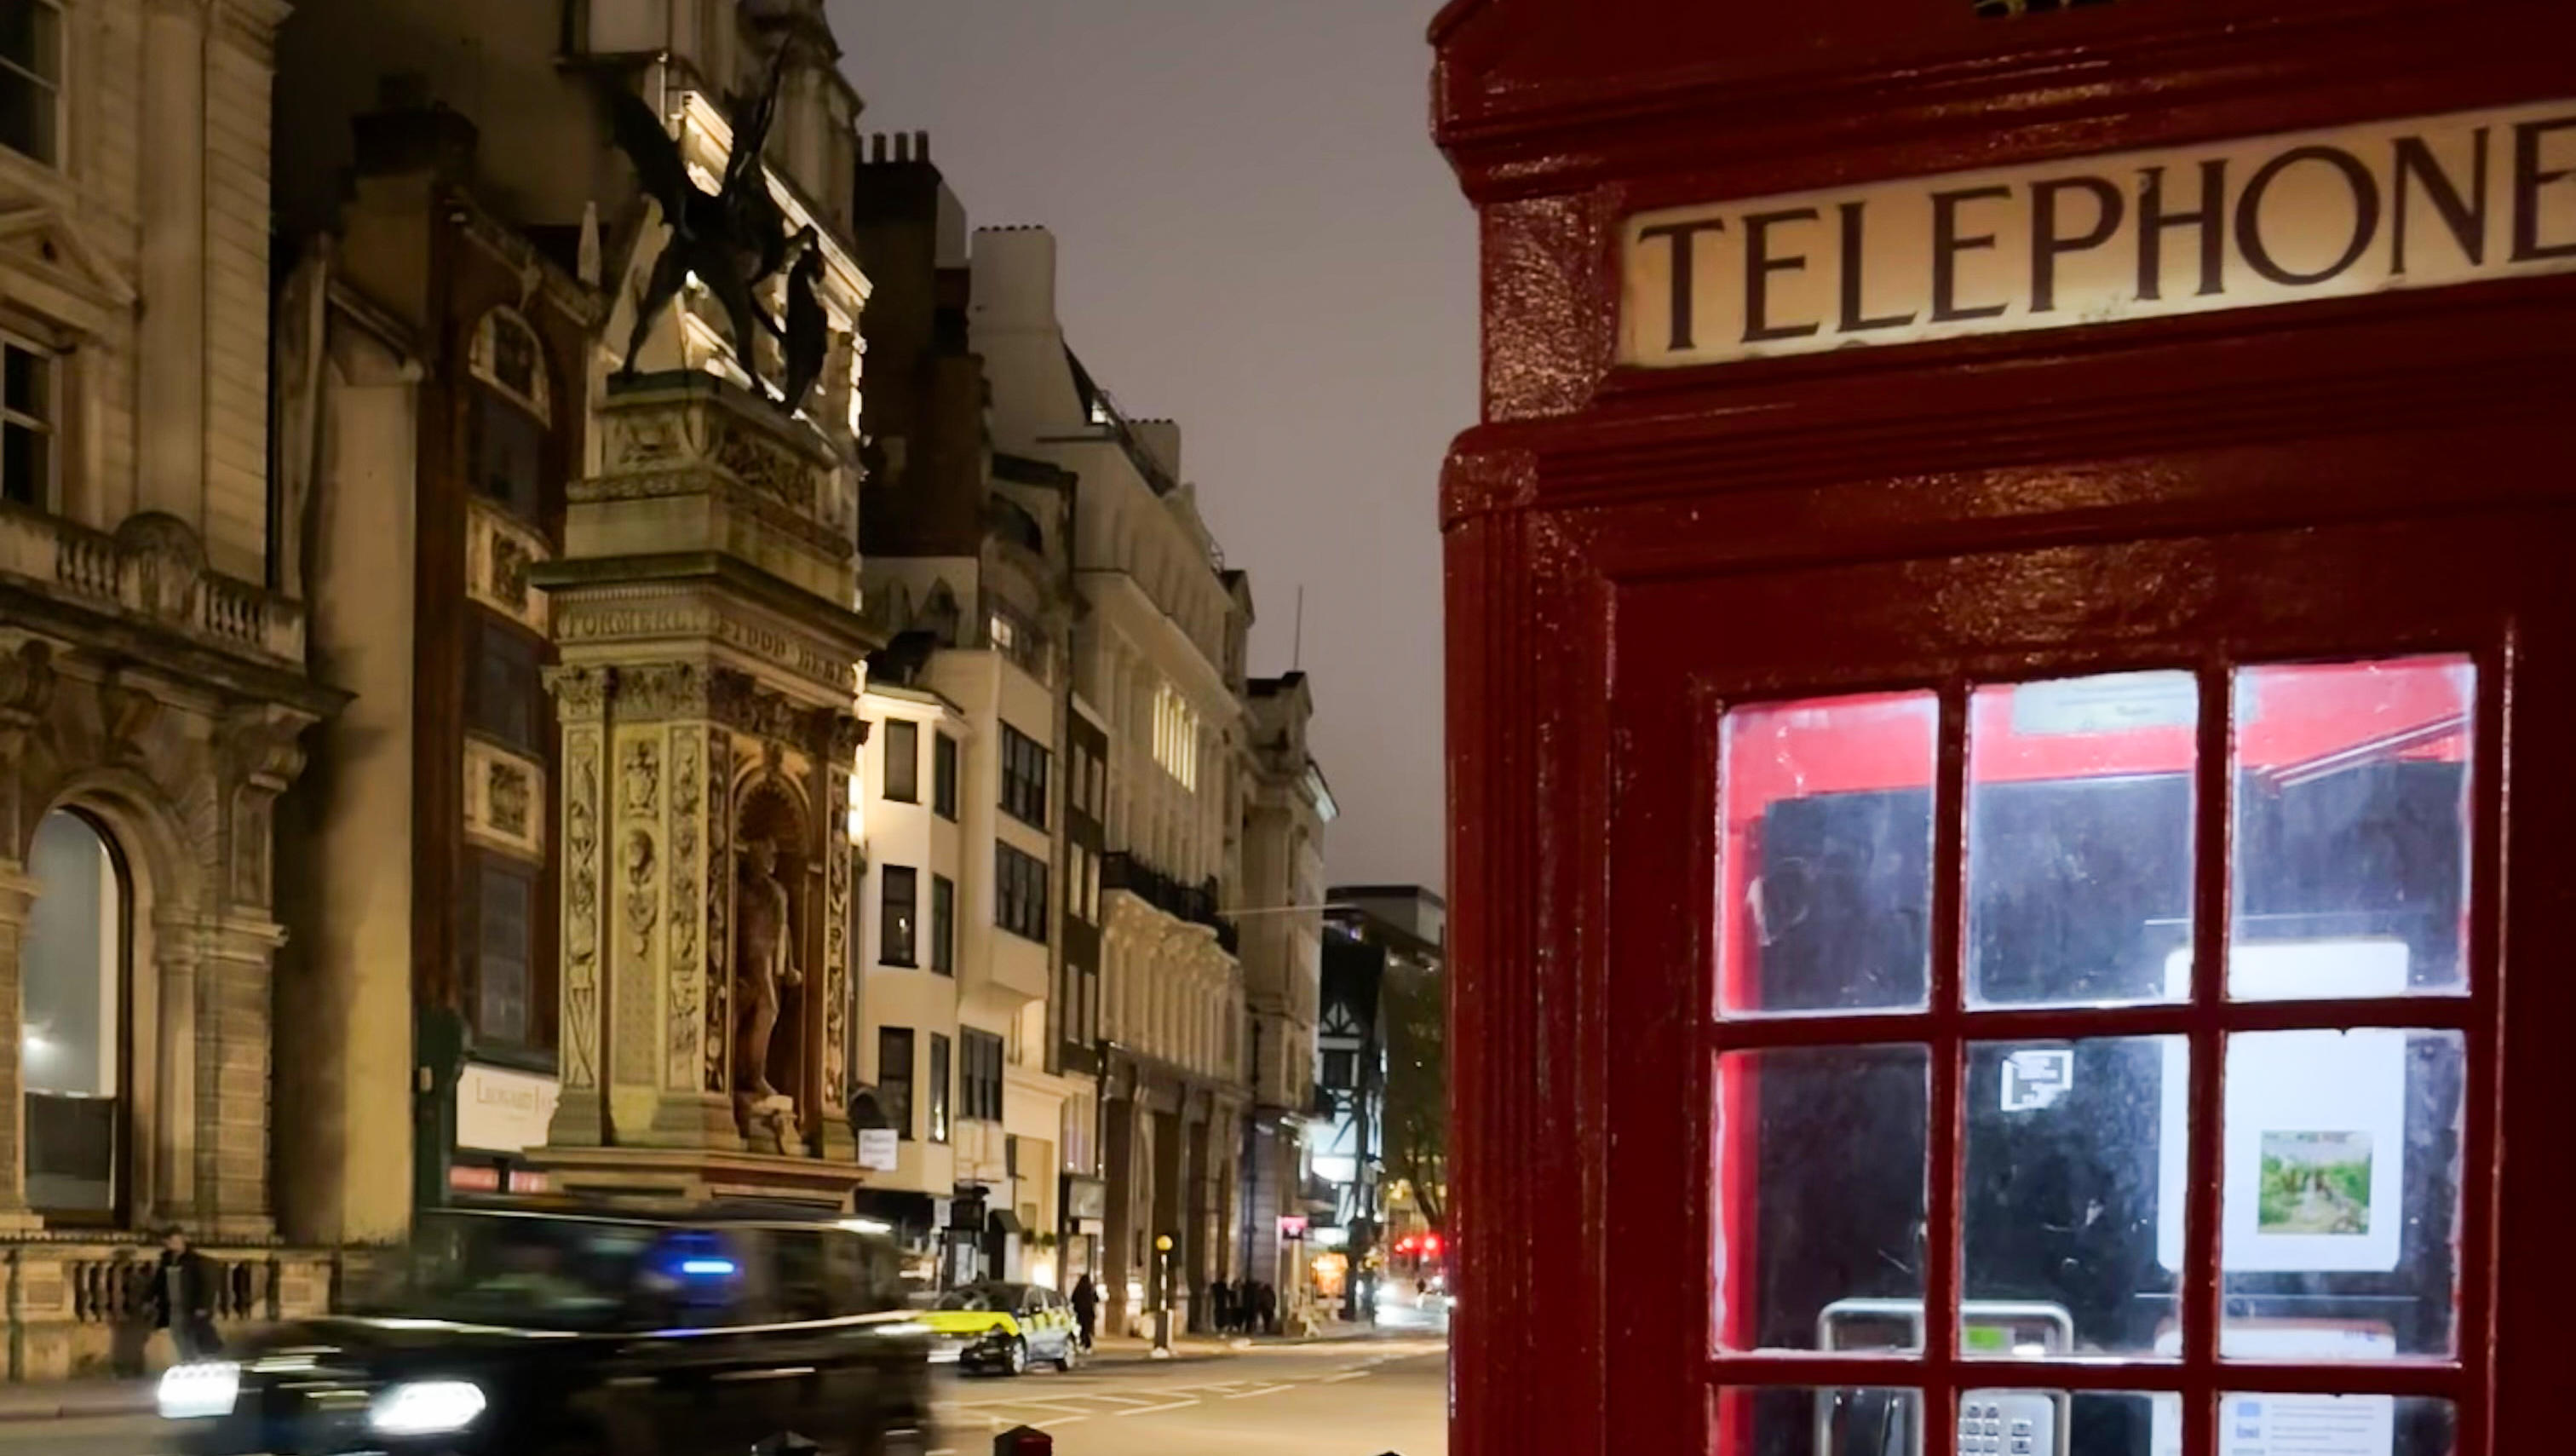 Jubiläum eines Kultkastens: Die rote Telefonzelle wird 100 Jahre alt